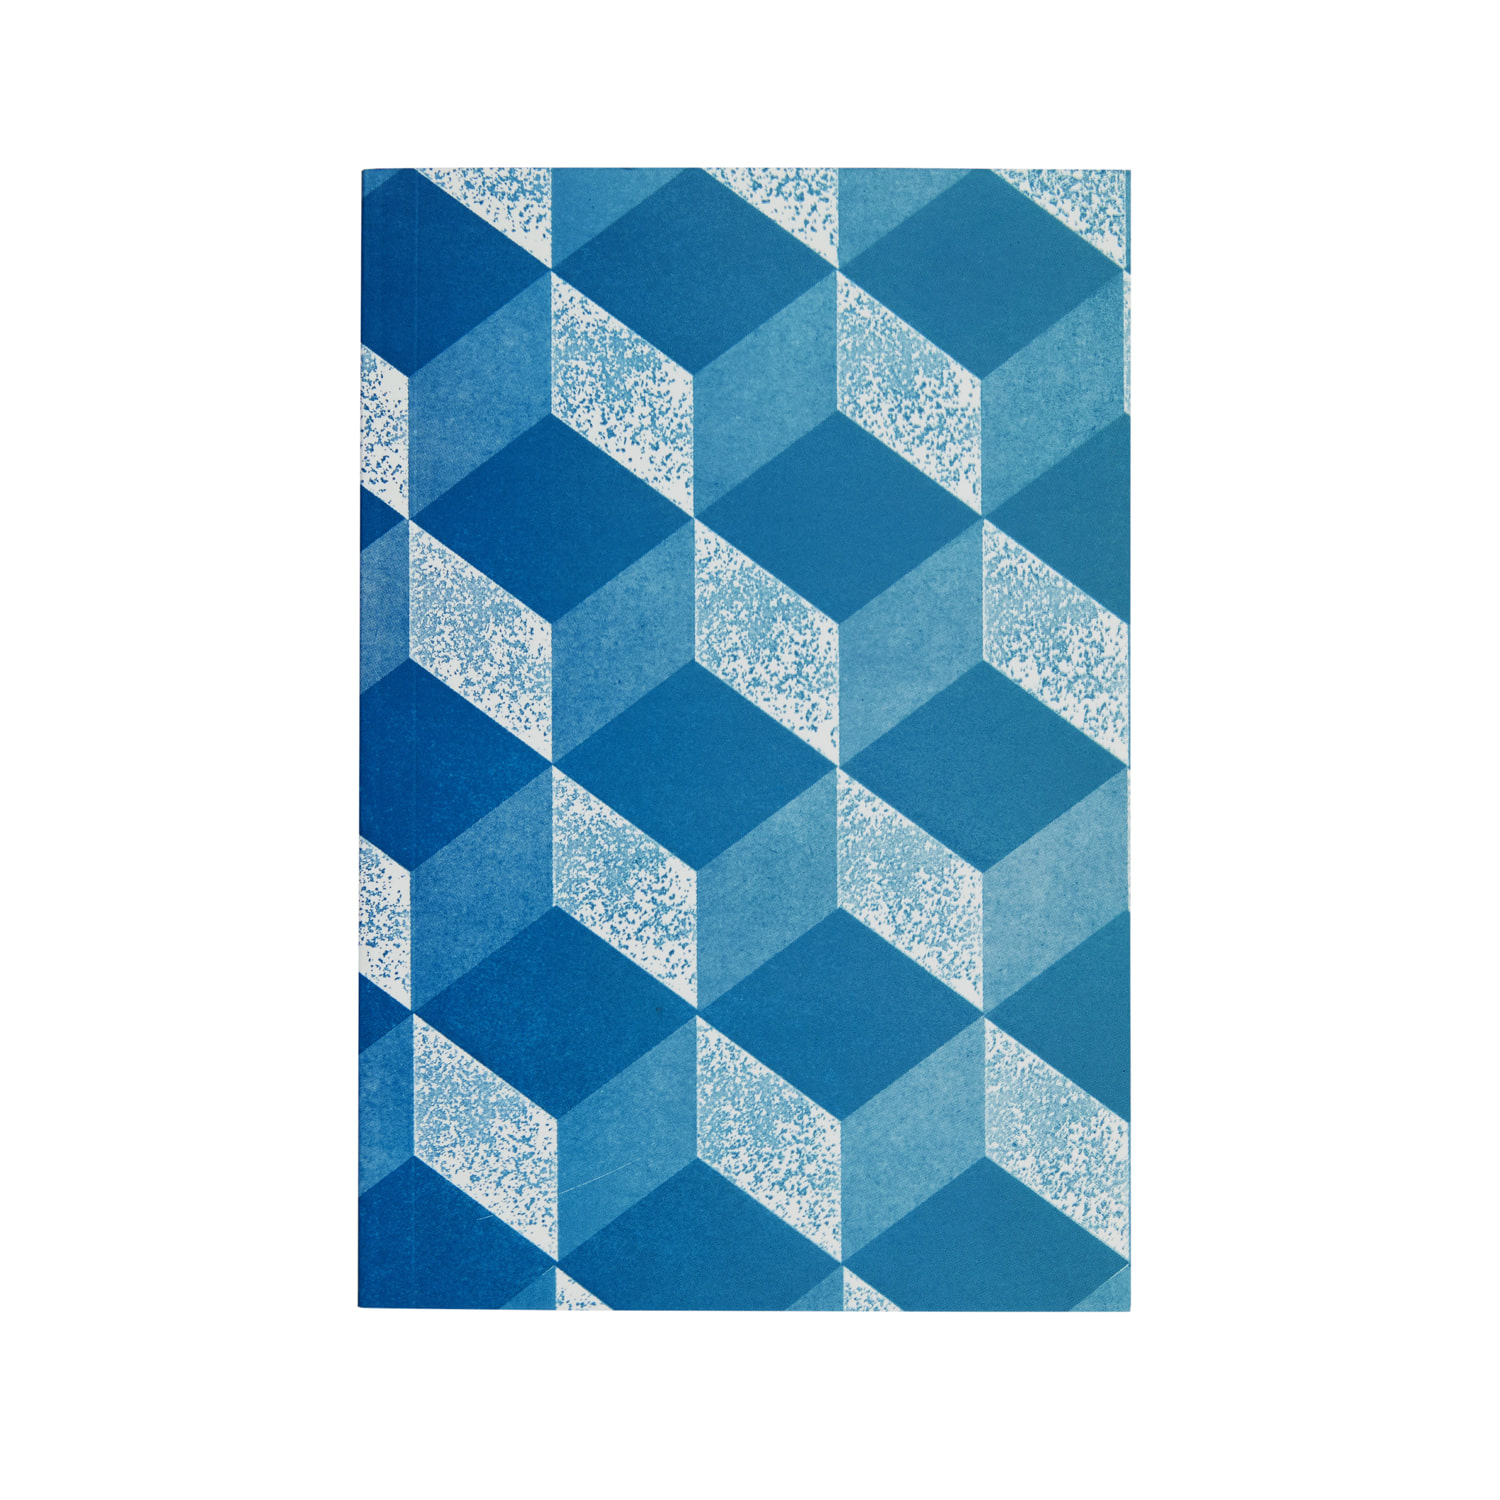 Agenda 2021 – Pocket Version (Pale Blue and Blue)